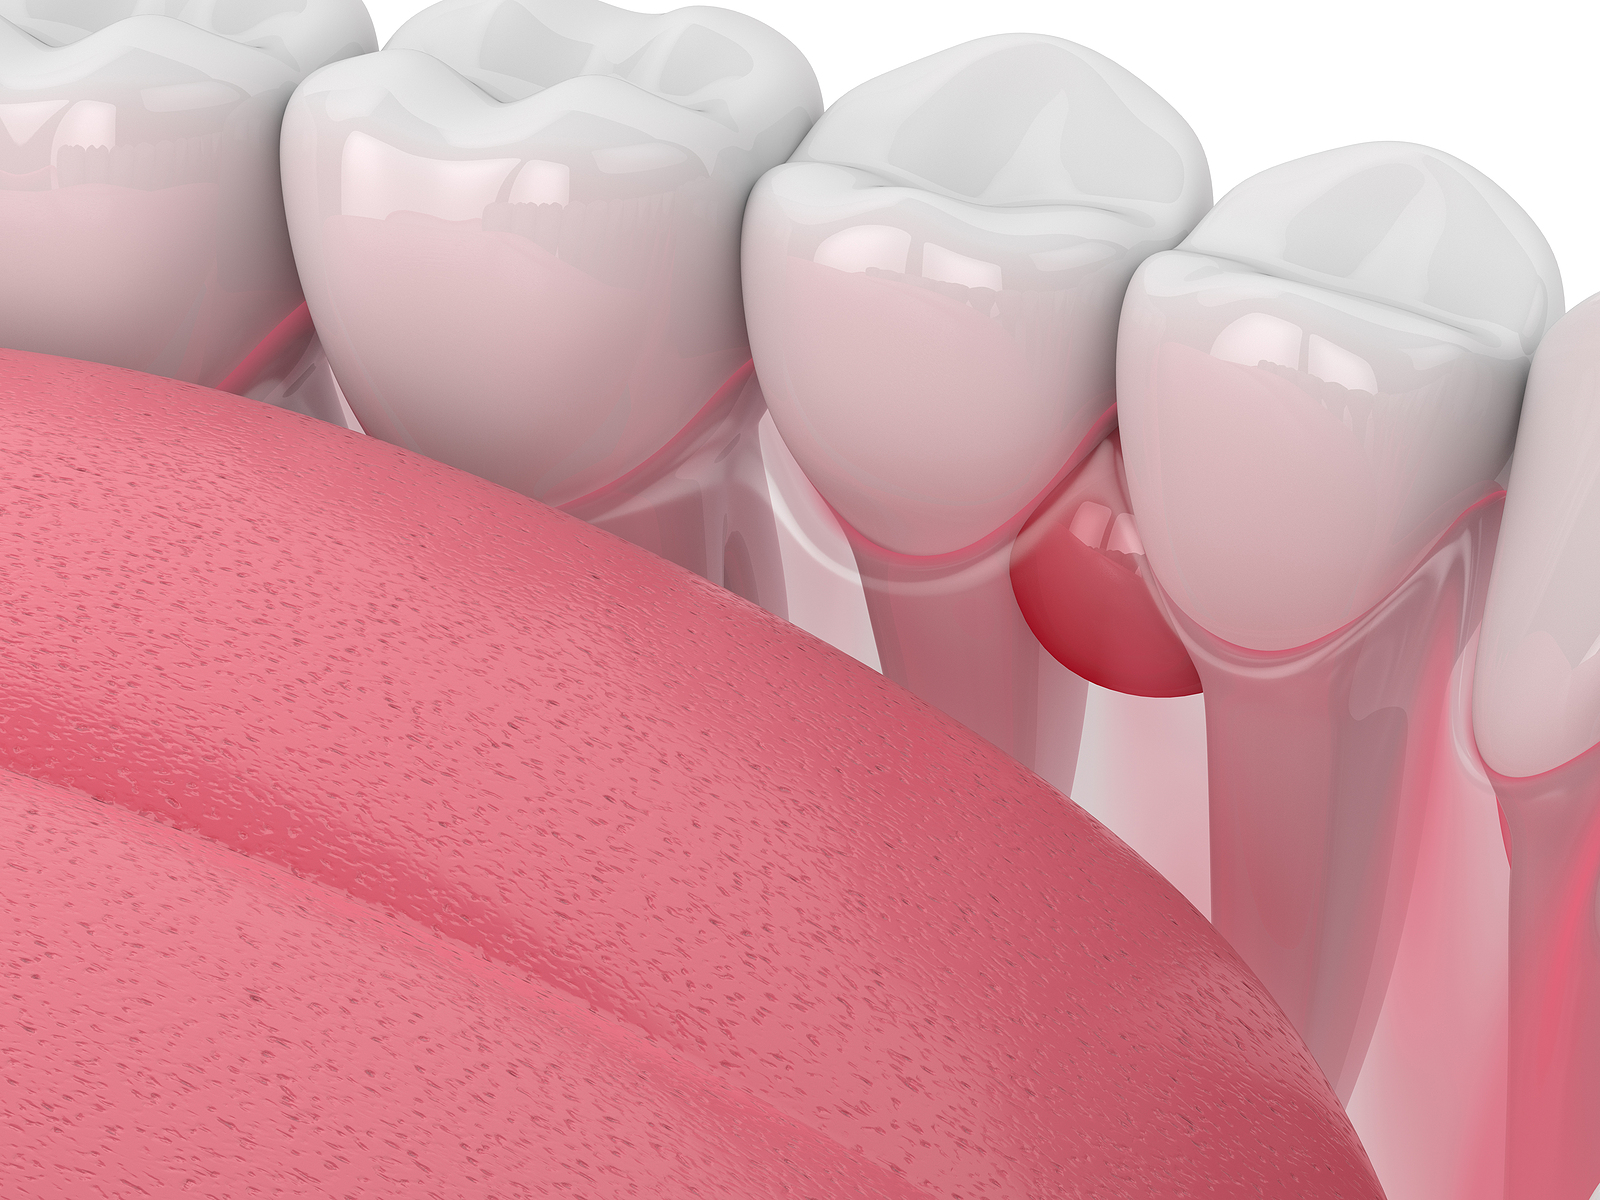 علائم و درمان فوری کیست دندان، لثه، دهان و ریشه دندان - دکتر سید احمد رضا هاشمی